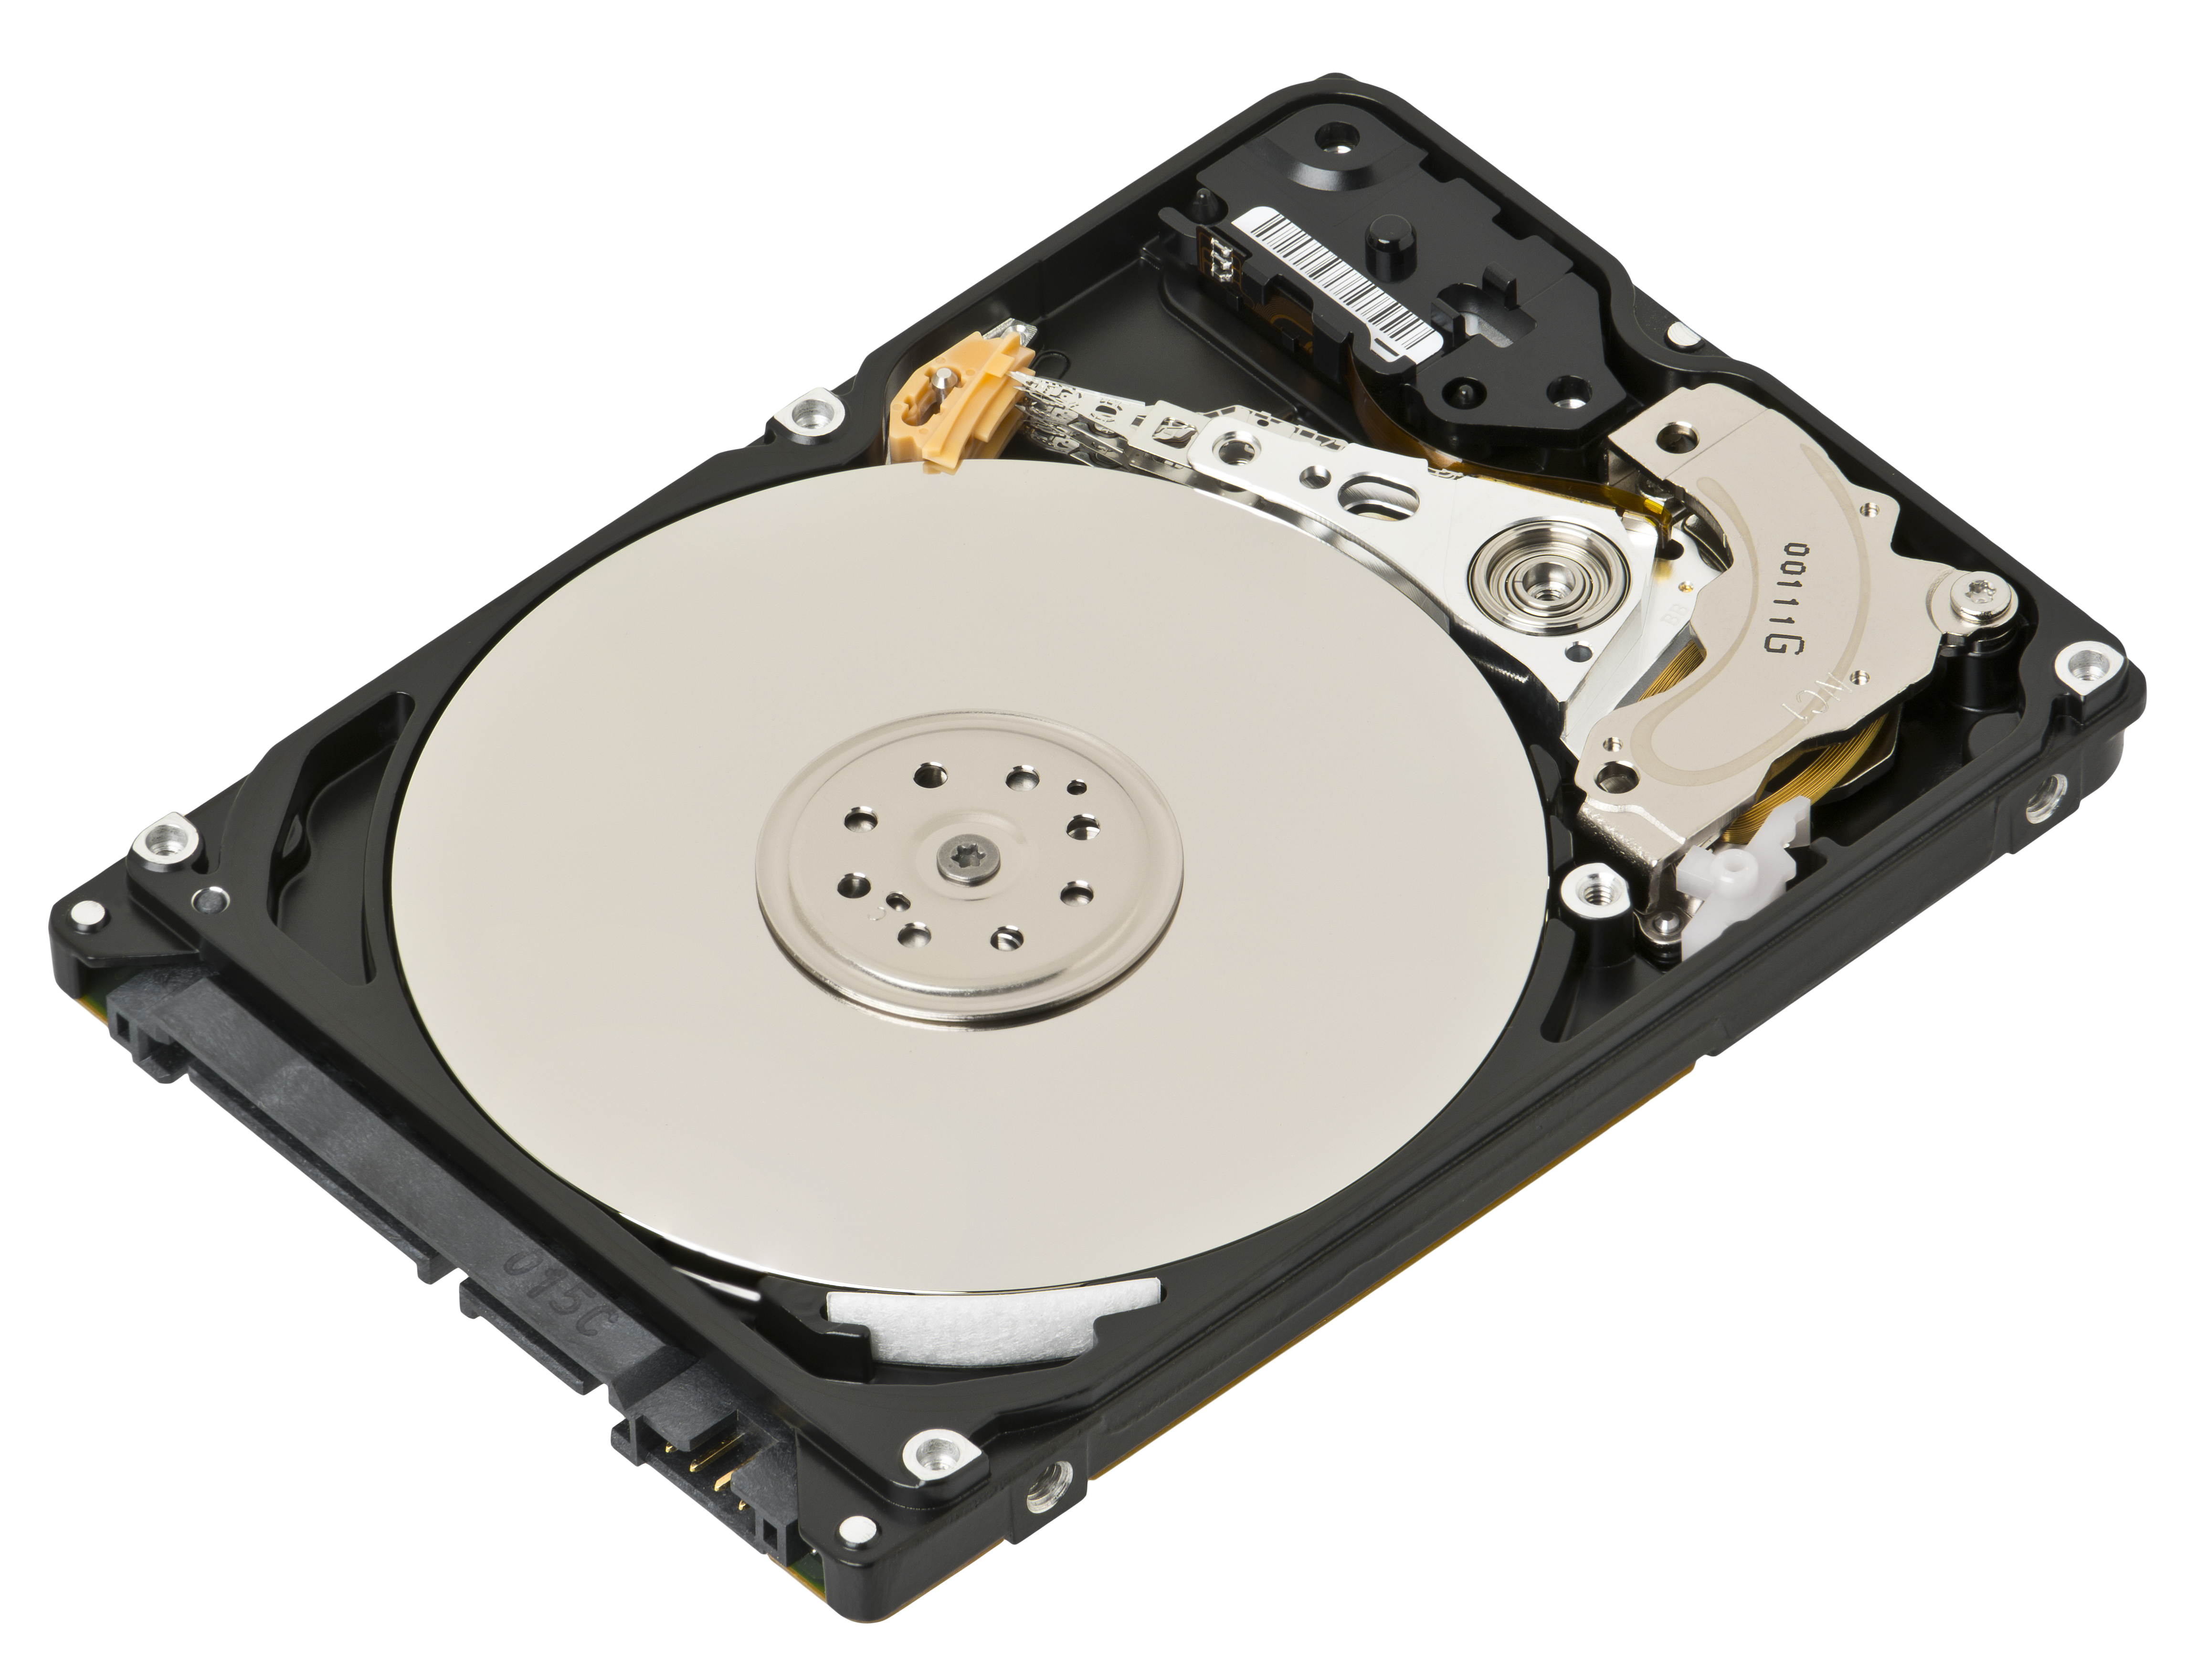 Dell H5102 hard disk drive 250GB SATA 3.5 inch 8MB cache, 7200RPM